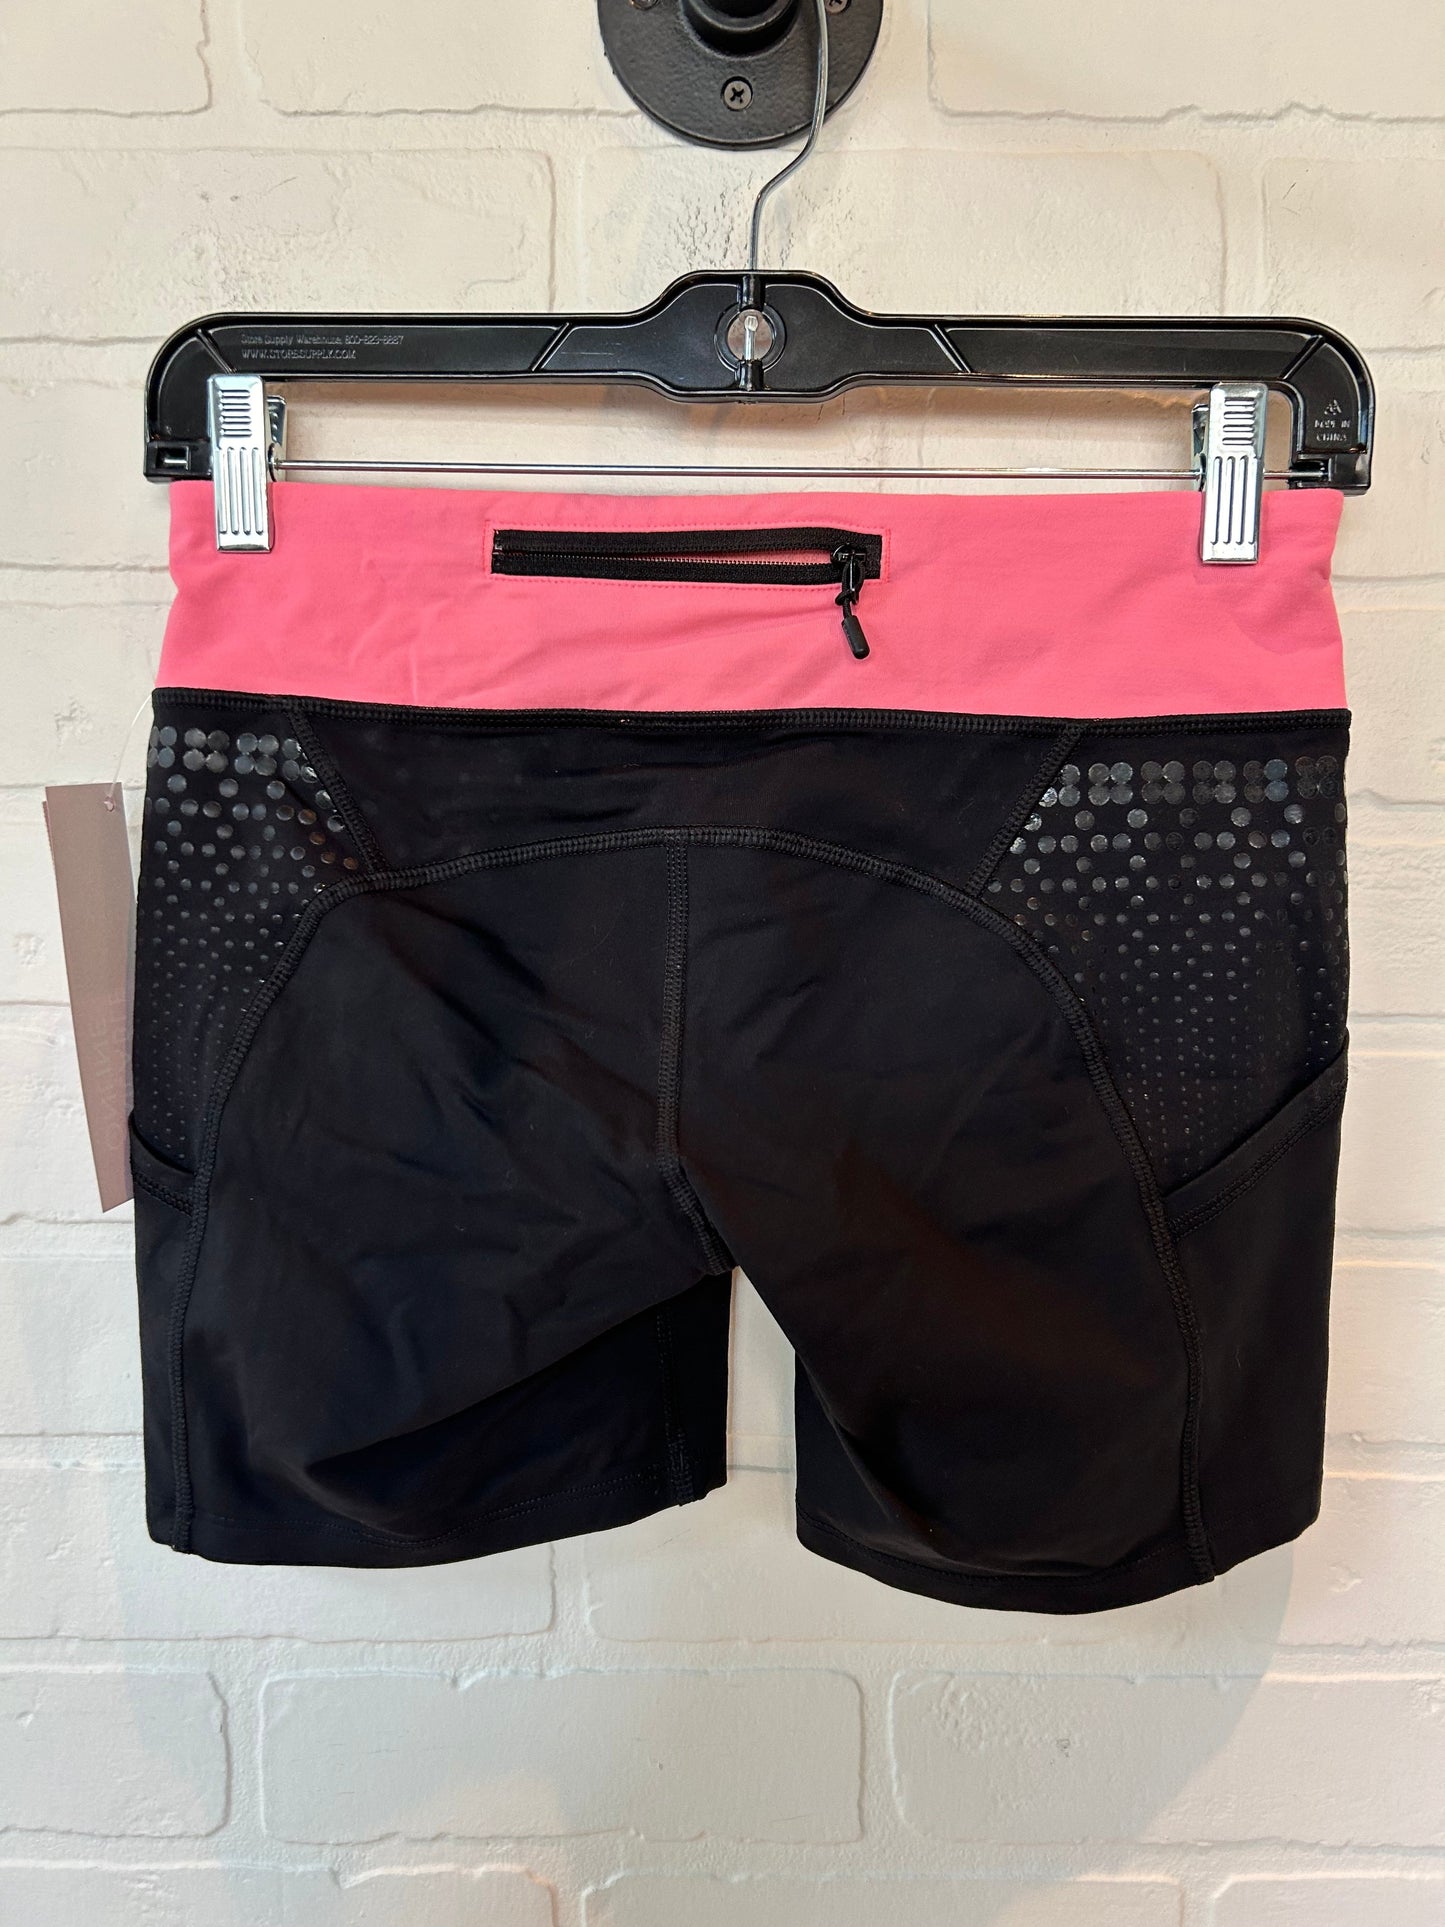 Black & Pink Athletic Shorts Lululemon, Size 6